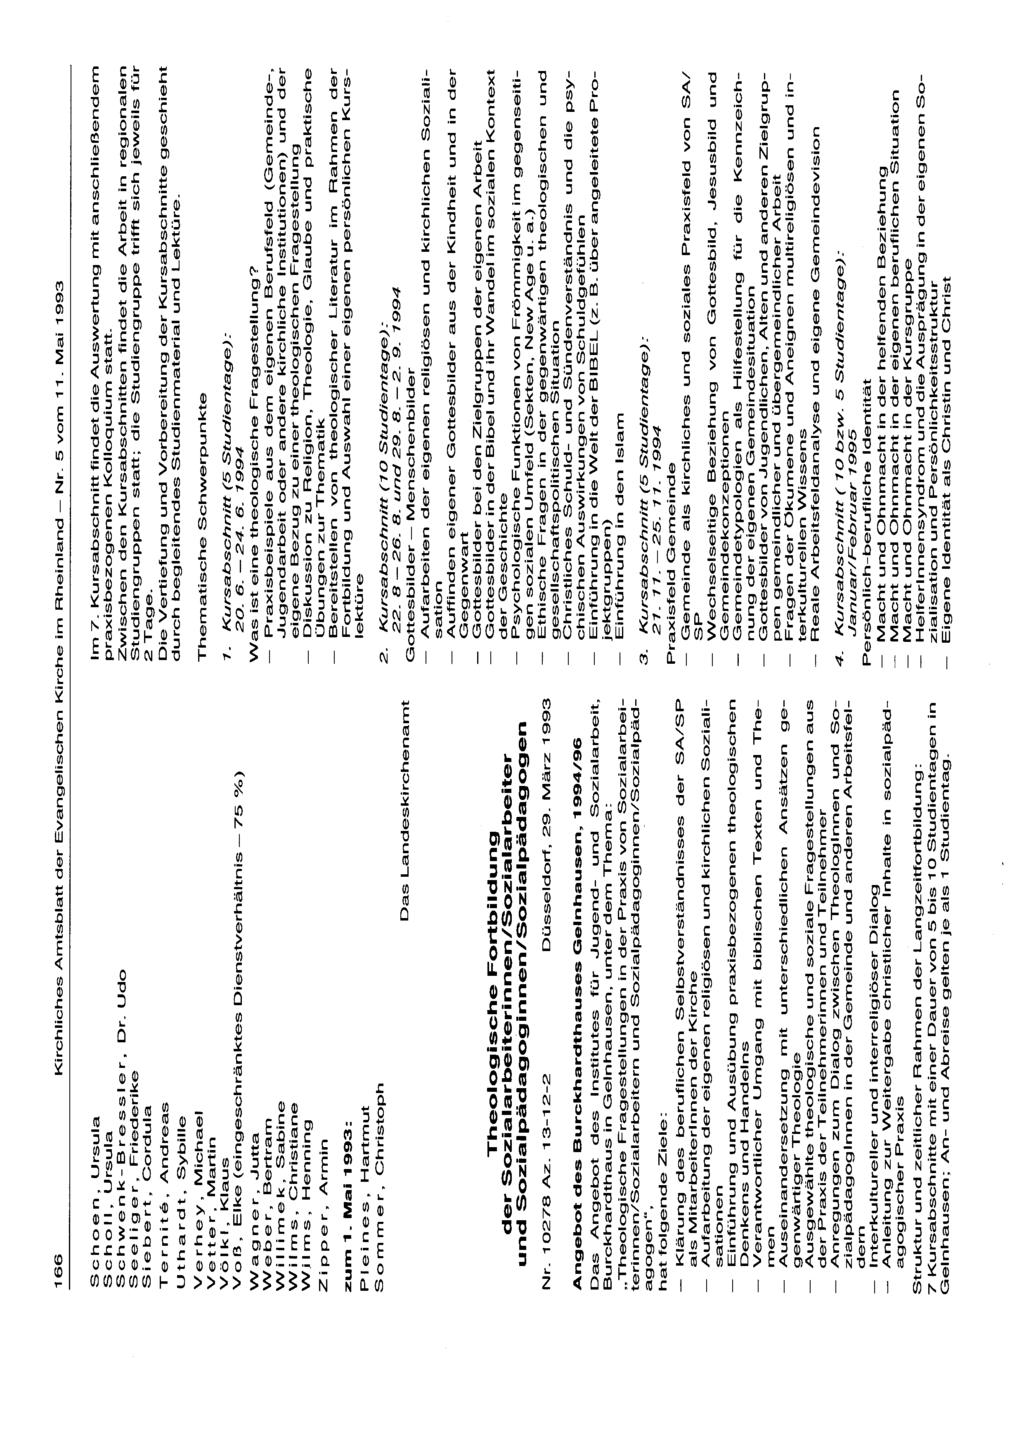 166 Kirchliches Amtsblatt der Evangelischen Kirche im Rheinland - Nr. 5 vom 11. Mai 1993 Schoen, Ursula Scholl, Ursula Schwenk-Bressler, Dr.